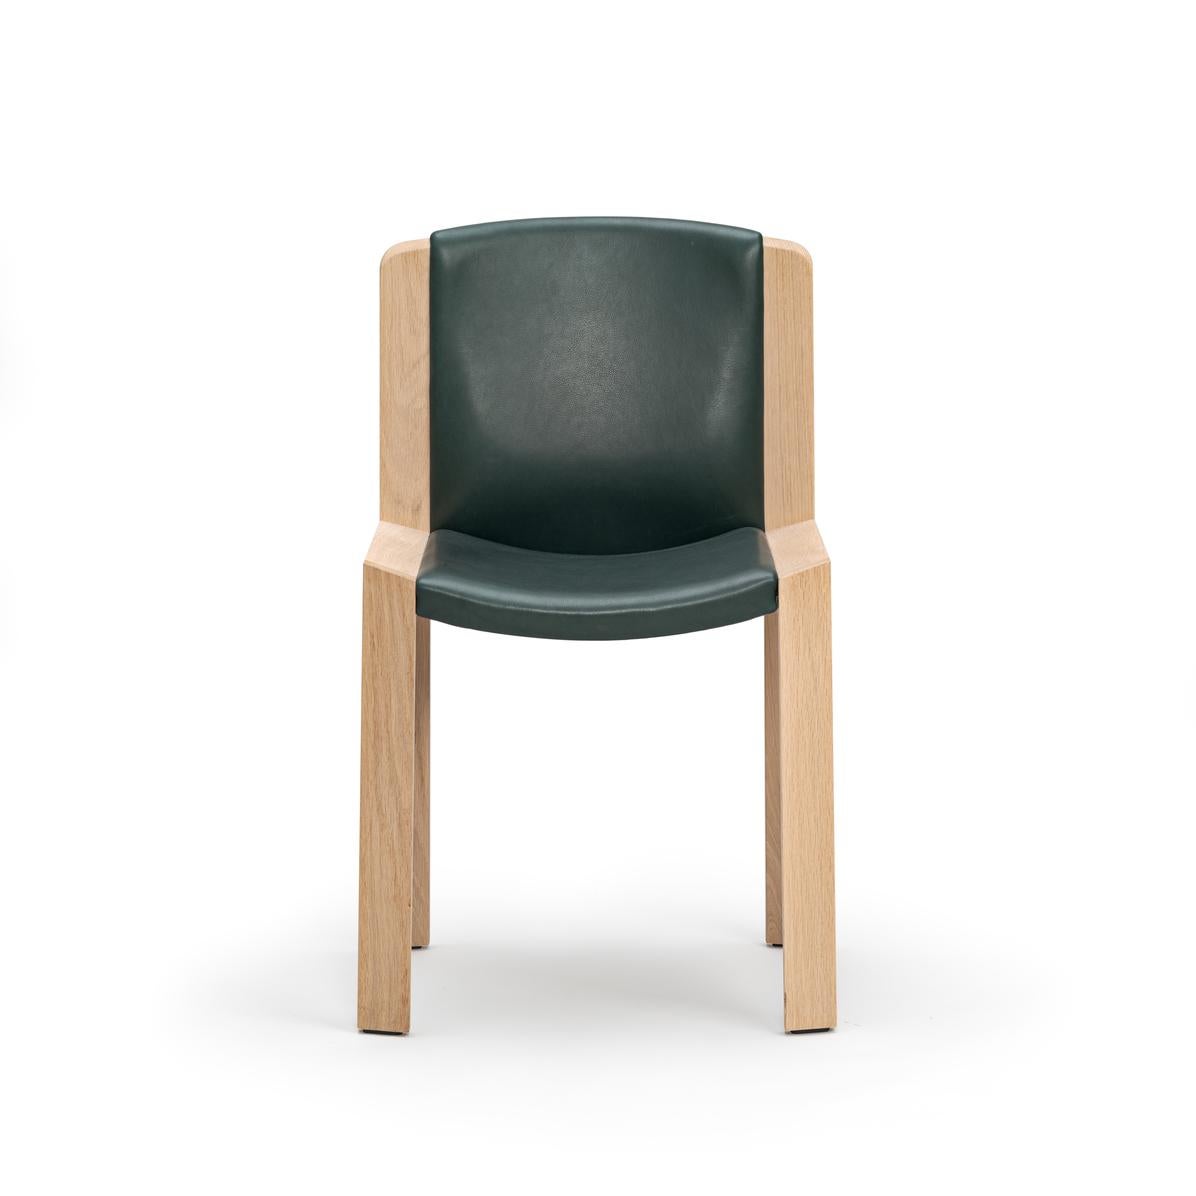 Chaise conçue par Joe Colombo en 1965. 

Conçue par le designer italien avant-gardiste Joe Colombo, la chaise 300 est un bel exemple de sa sensibilité en matière de design fonctionnel. L'assise et le dossier rembourrés, doucement courbés à